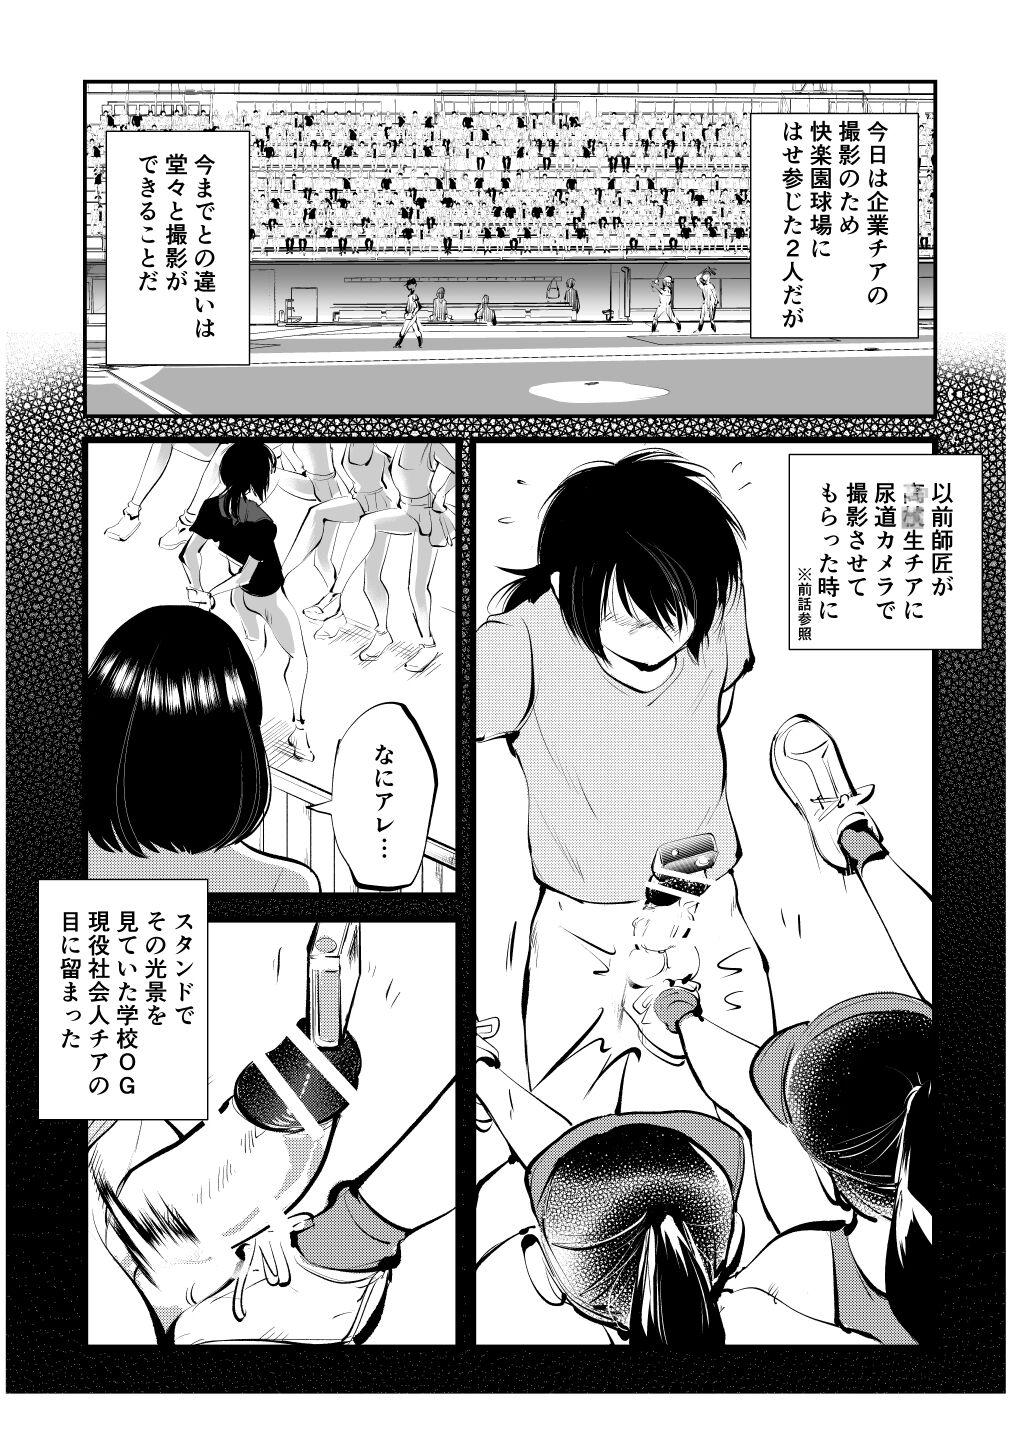 Banheiro Kinkeri Cheer Girl VS Tosatsuma Shakai Hito Cheer Girl-hen - Original Amador - Page 4